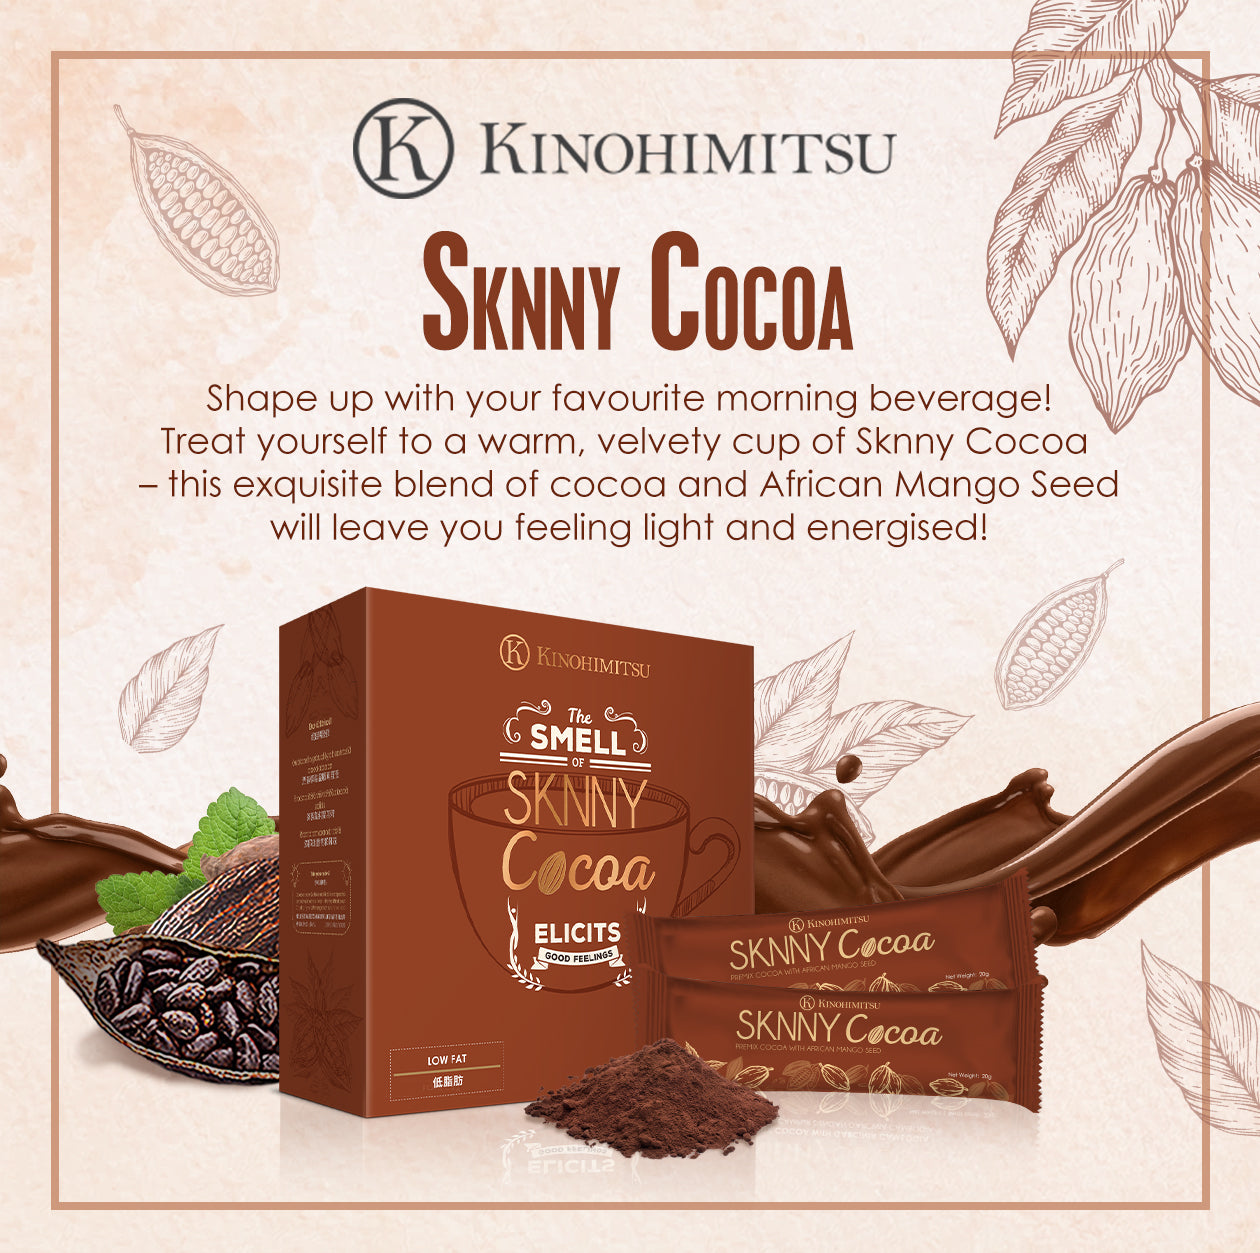 Sknny Cocoa